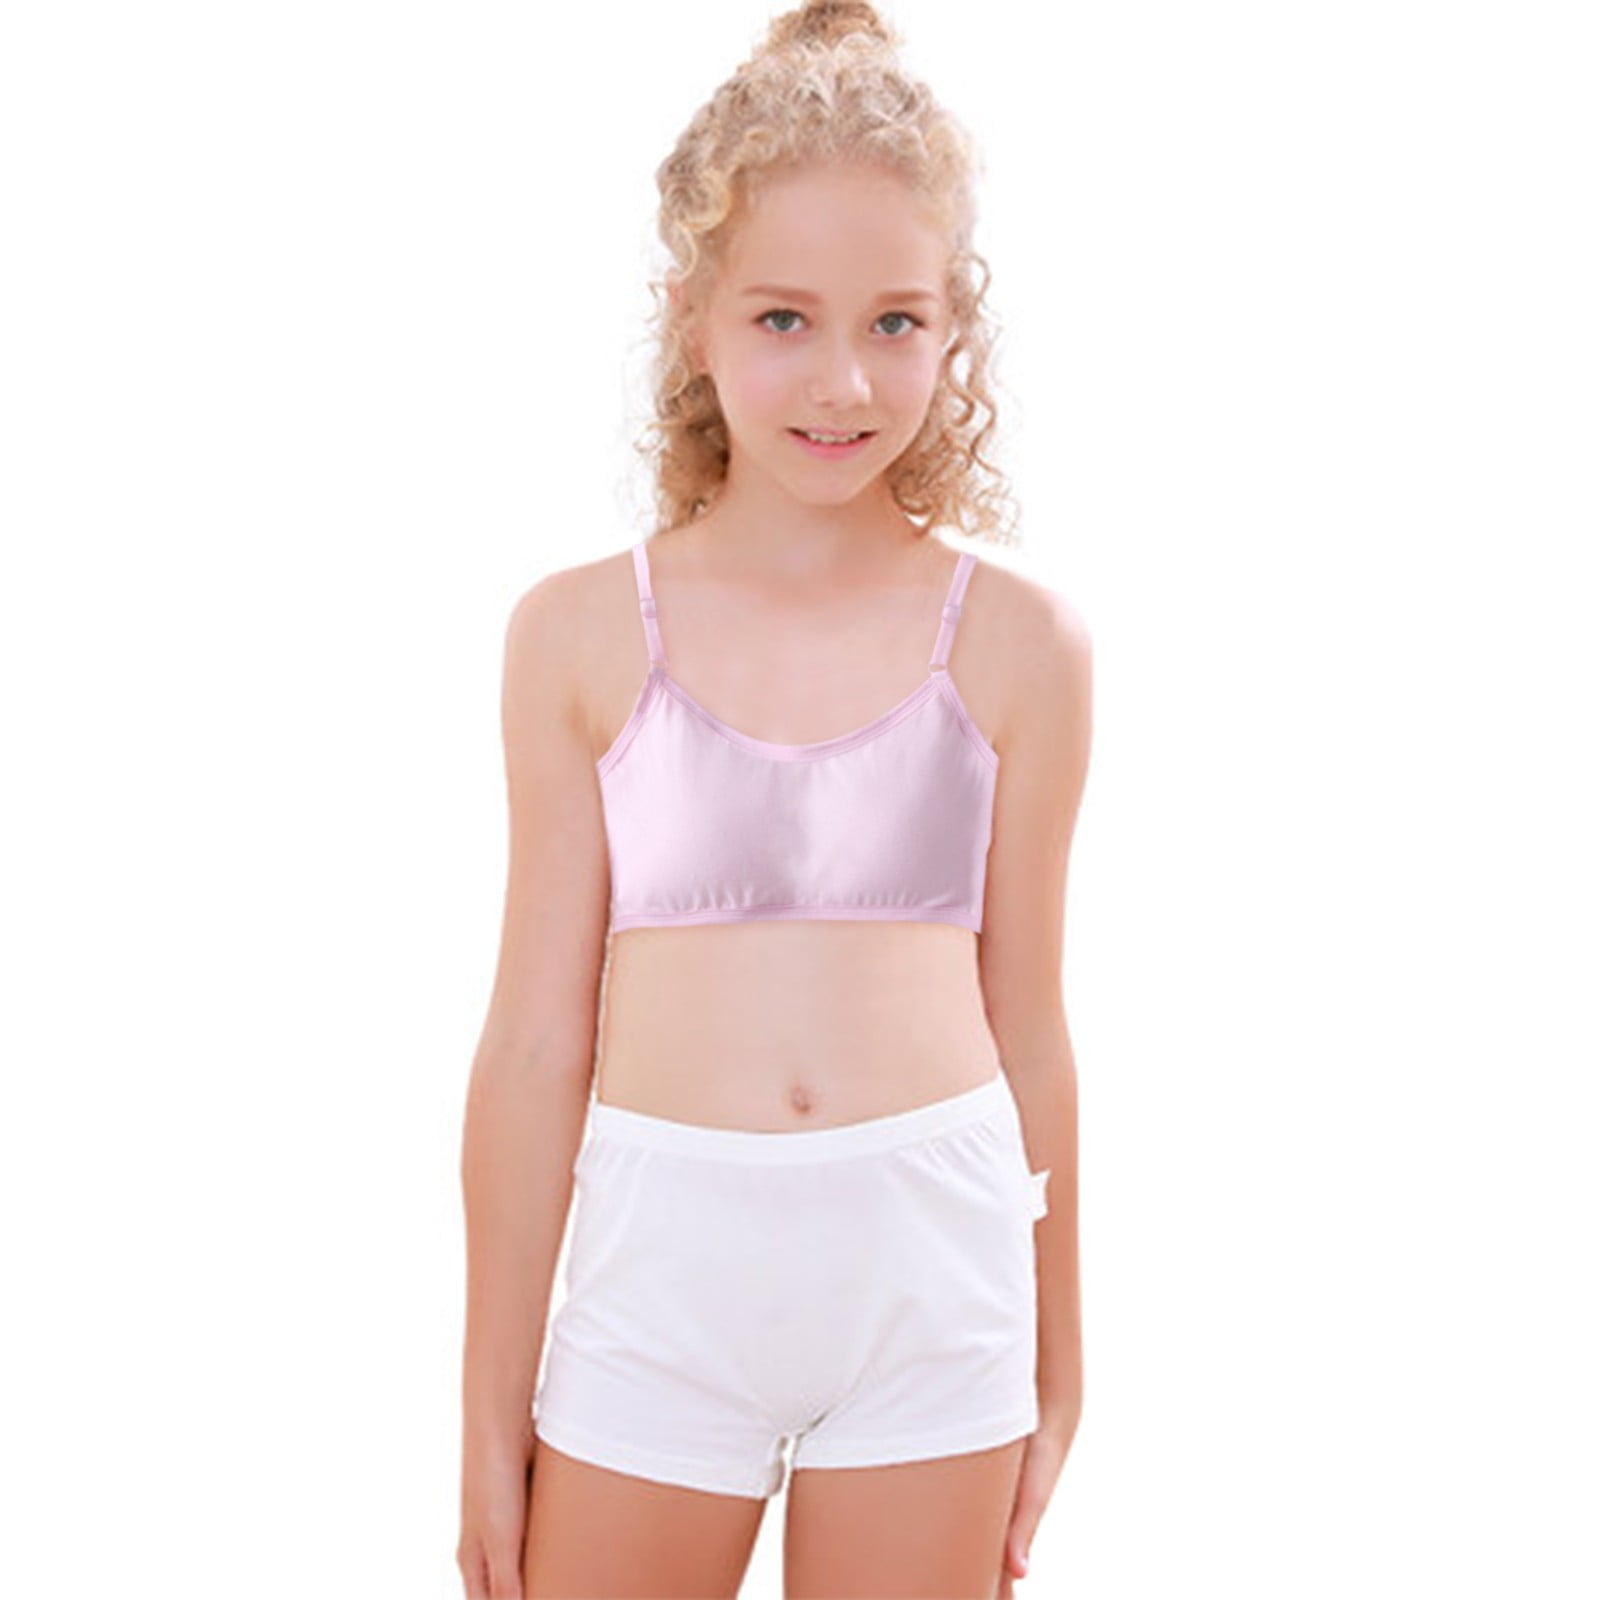 Teenager Girls Bra Pack Of 3 100% Cotton Sports Soft Bra Bralette Without  Underwire Seamless Bustier Underwear Sports Underwear For 12-18 Years  Childr